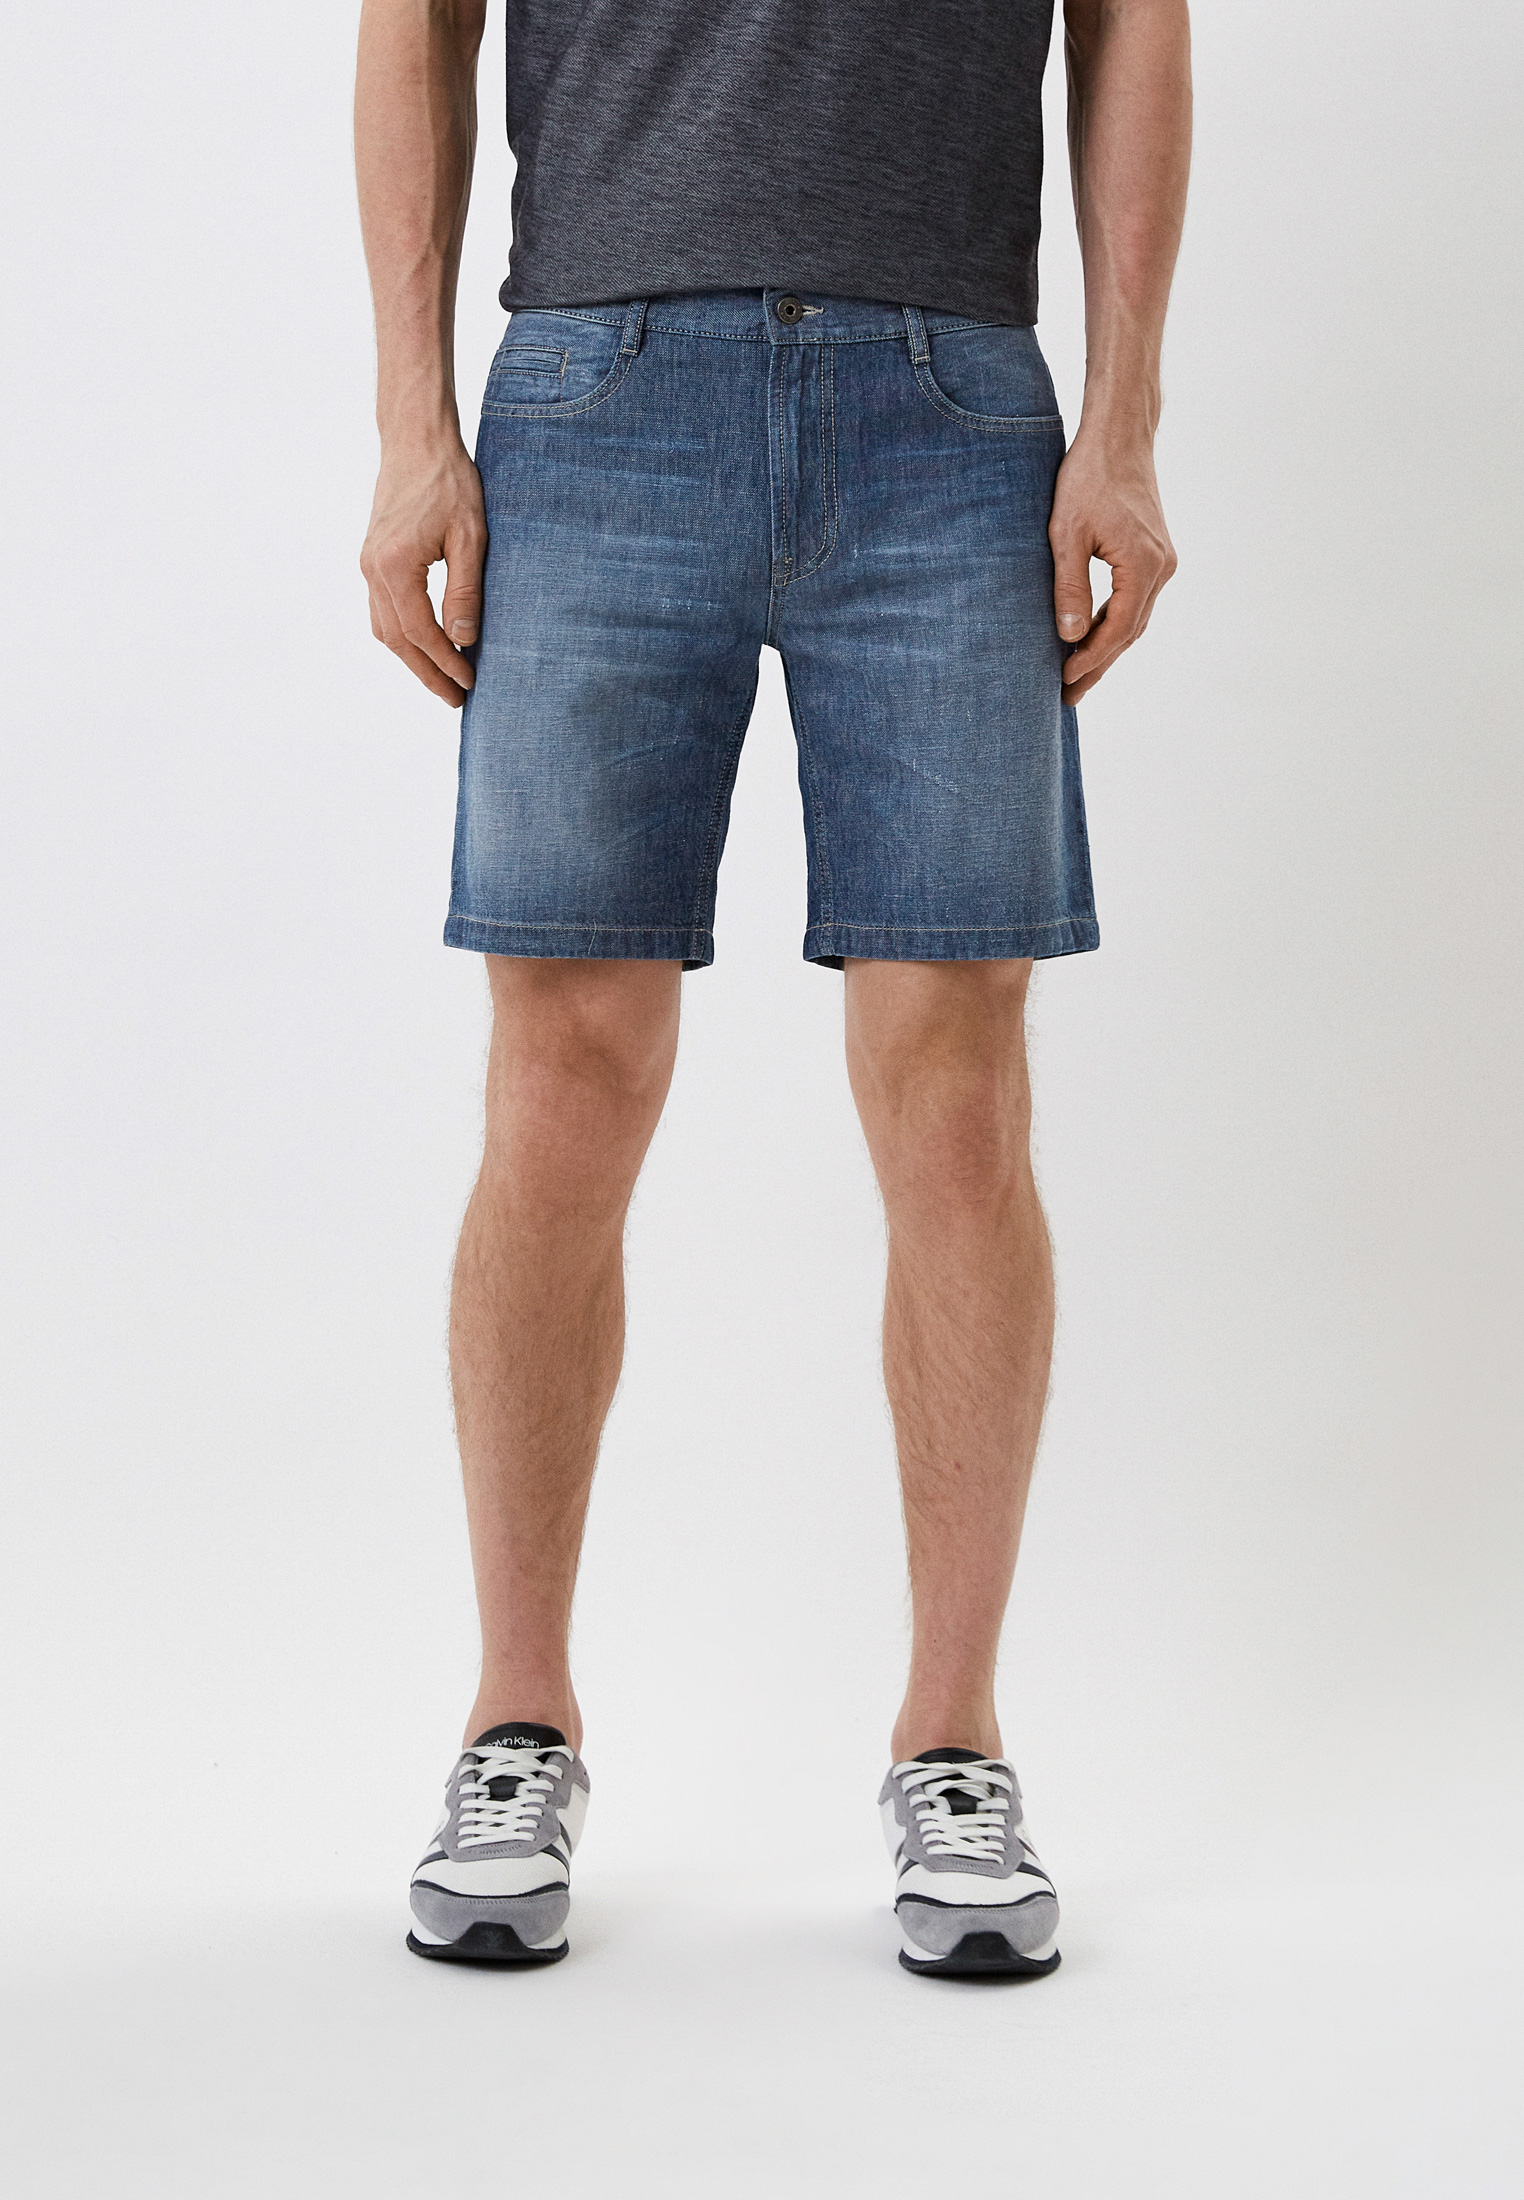 Мужские джинсовые шорты Bikkembergs (Биккембергс) C O 102 00 T 9765: изображение 1